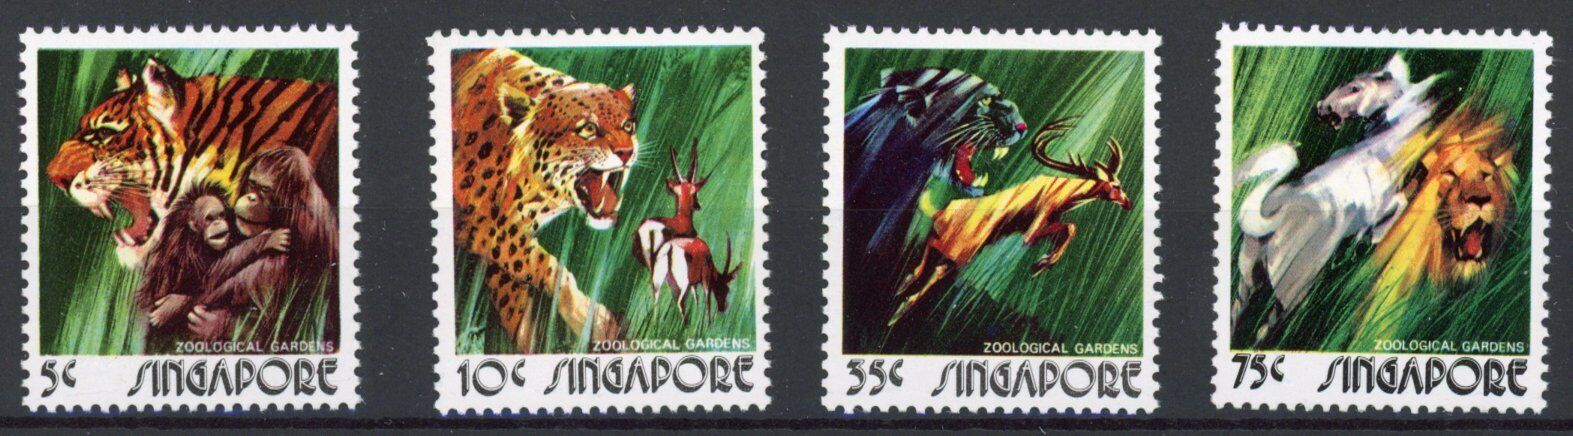 シンガポール切手 1973年 シンガポール動物園 動物 4種 - すてきな郵便